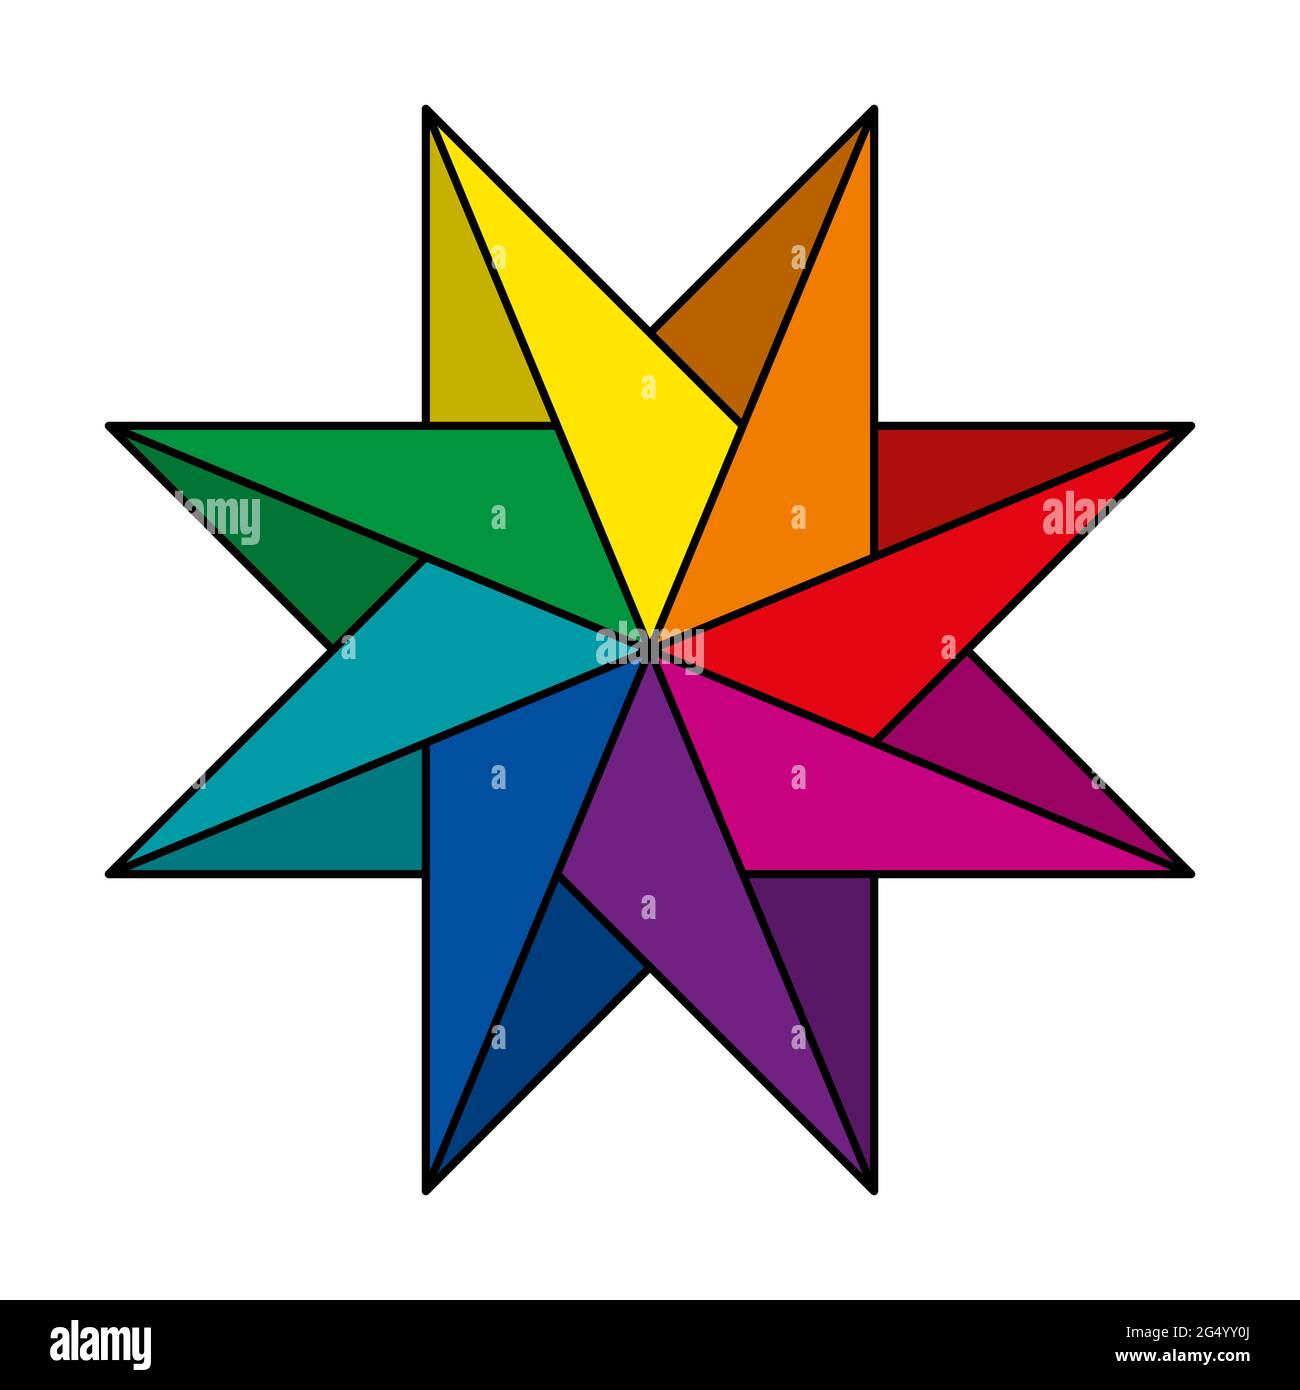 Stella a otto punte di colore arcobaleno e a forma di pinwheel. Figura geometrica, che crea l'impressione di rotazione, simile ai ricci di una ruota che gira. Foto Stock